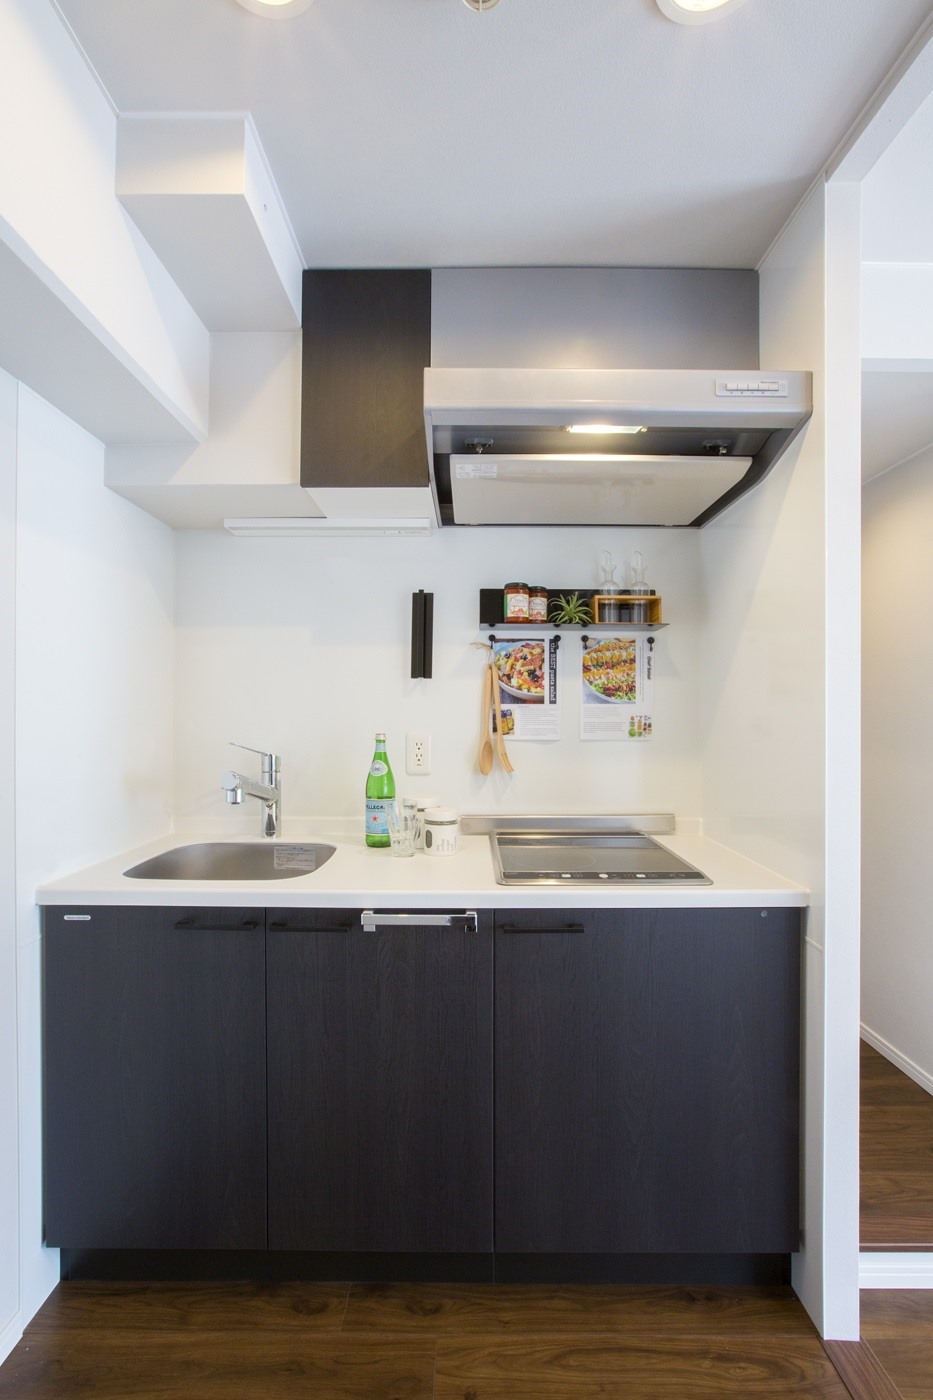 お部屋の雰囲気になじむスタイリッシュなキッチン。お掃除しやすいIHクッキングヒーターを採用。(2022年1月)